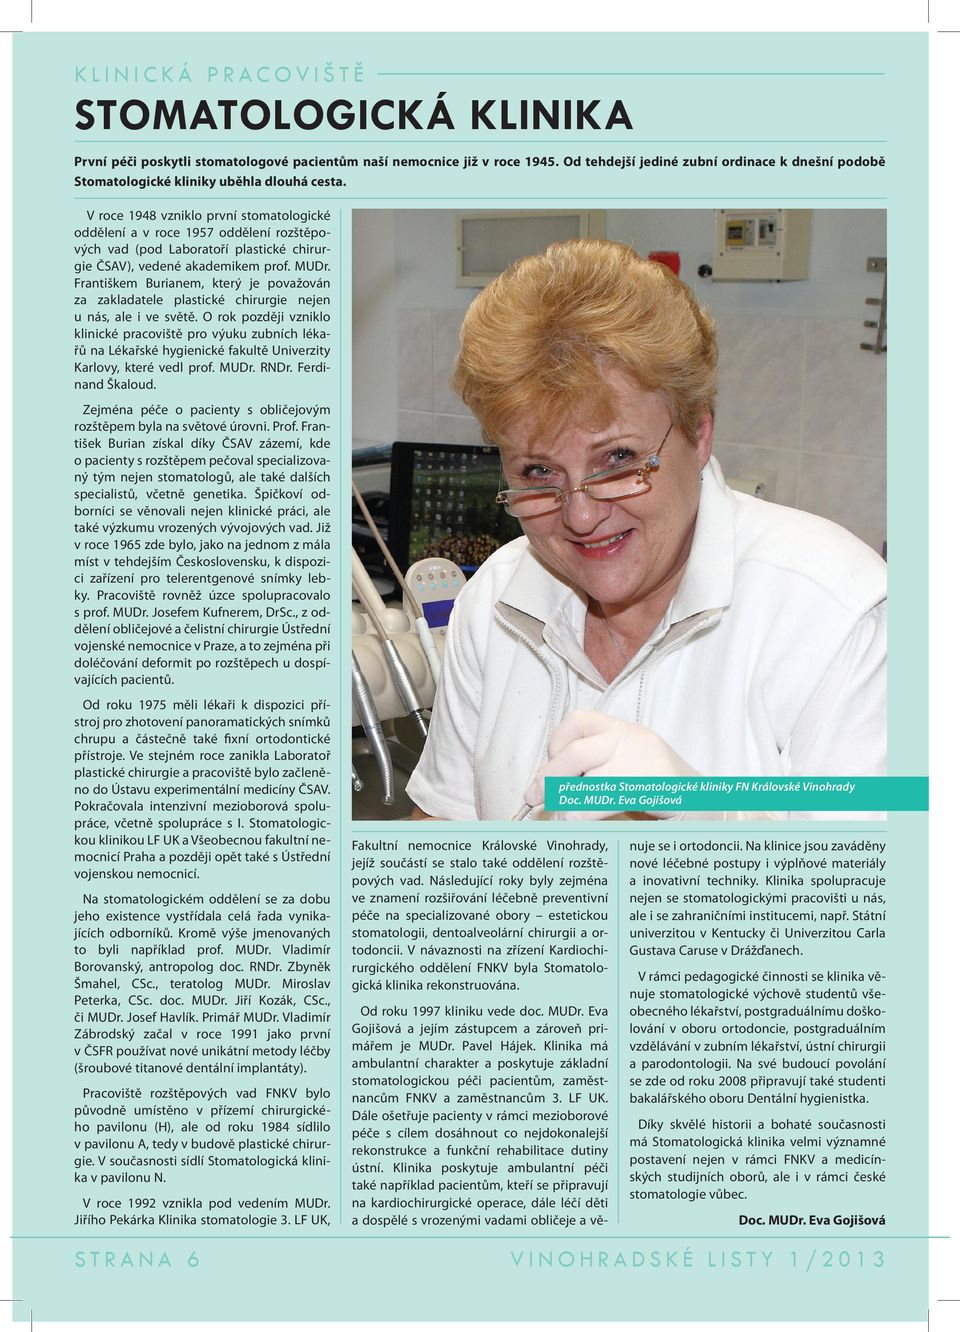 V roce 1948 vzniklo první stomatologické oddělení a v roce 1957 oddělení rozštěpo vých vad (pod Laboratoří plastické chirur gie ČSAV), vedené akademikem prof. MUDr.